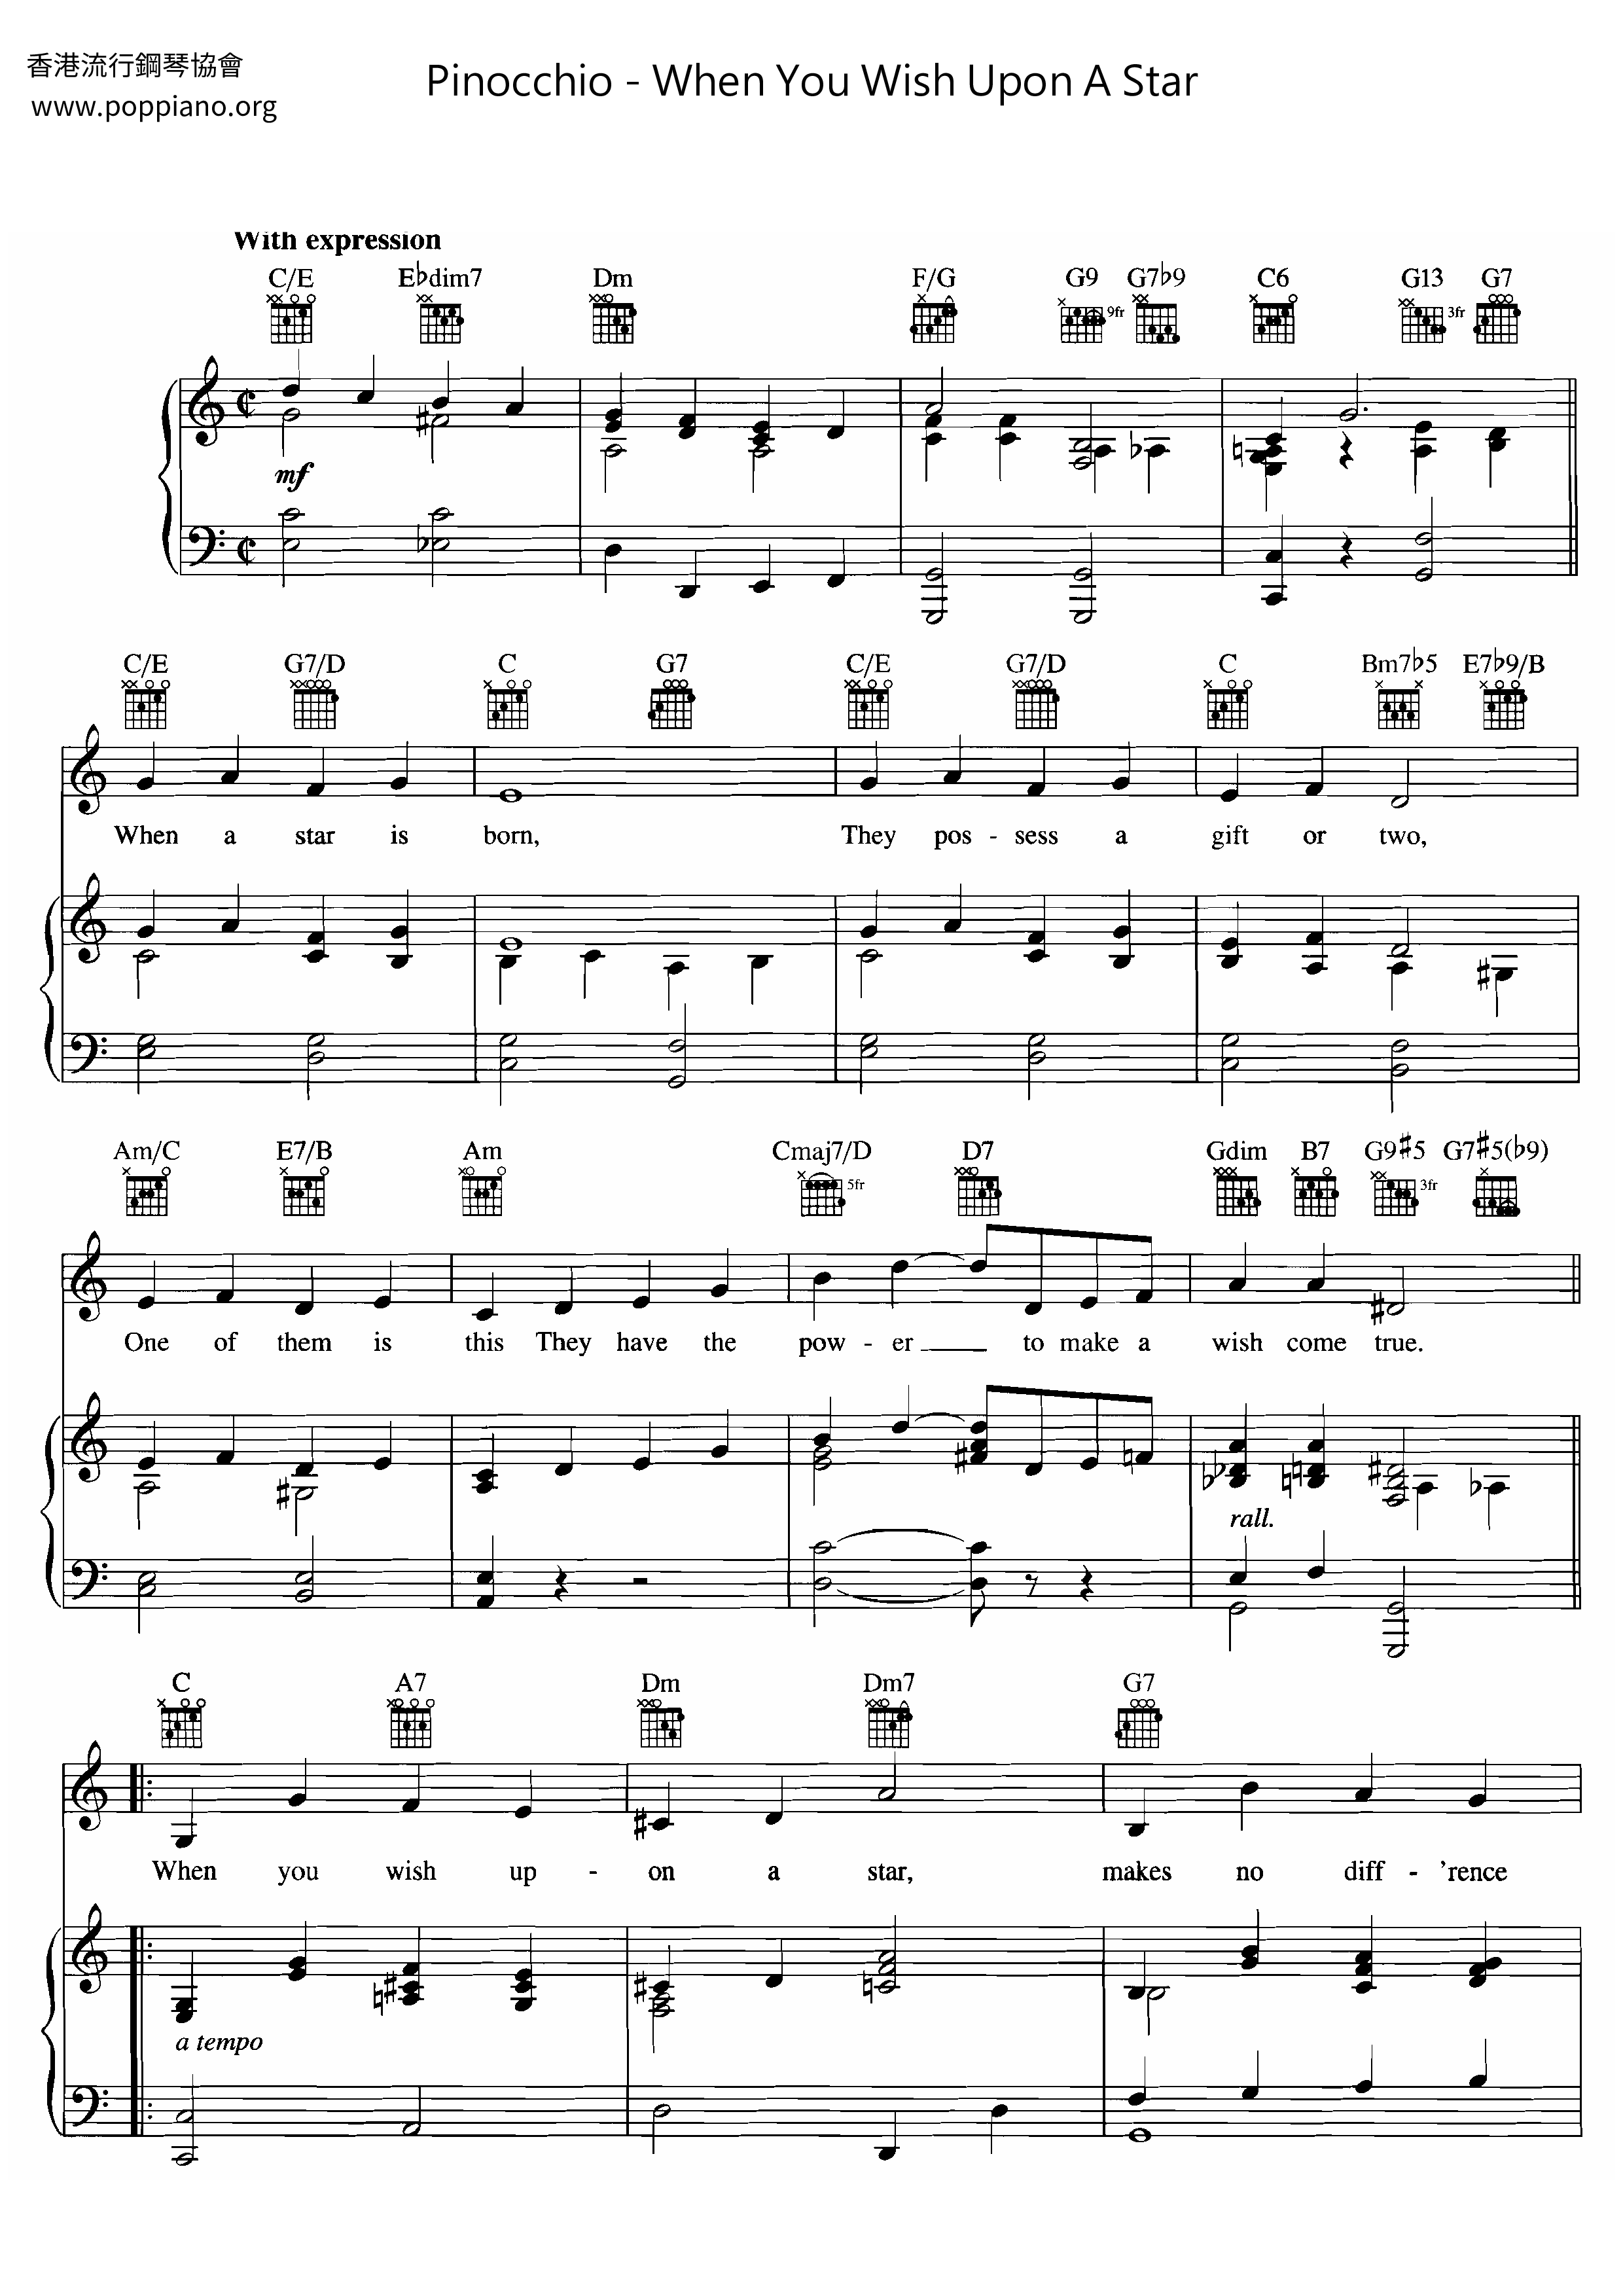 Disney Cinderella Sheet Music Pdf 星に願いを 楽譜 ディズニー Free Score Download